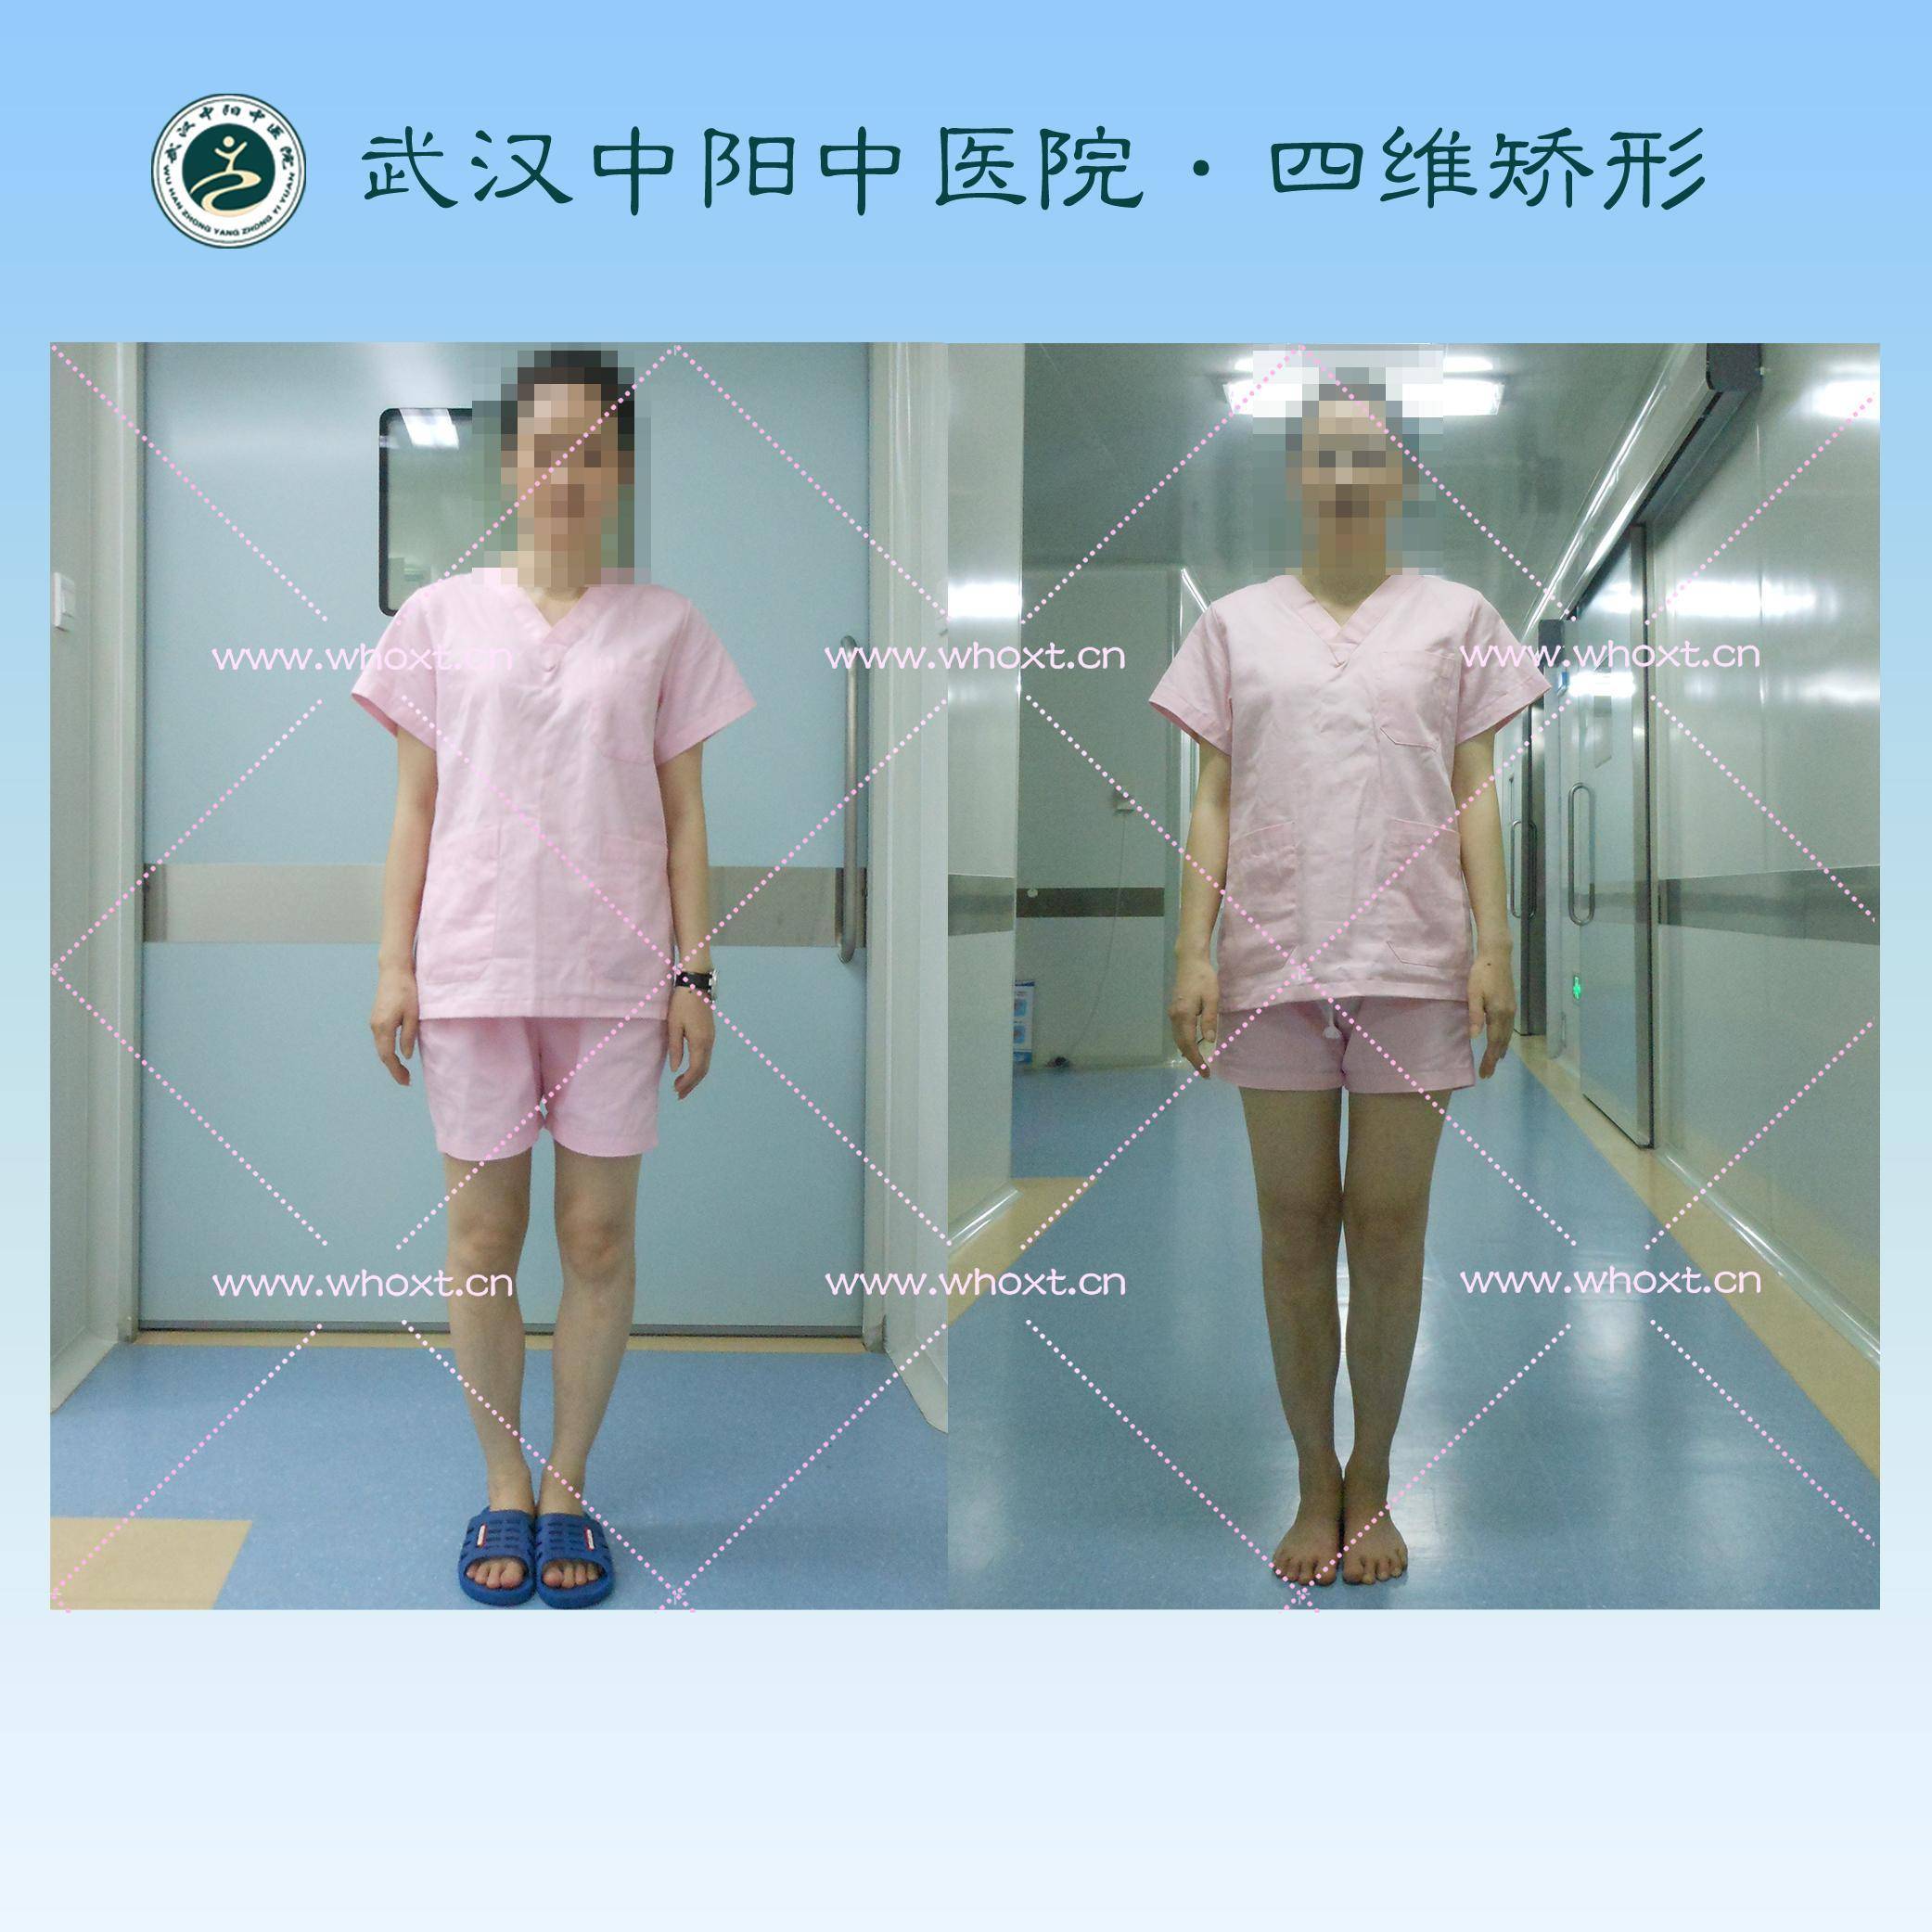 武汉中阳中医院四维矫形技术,更多o型腿患友的选择